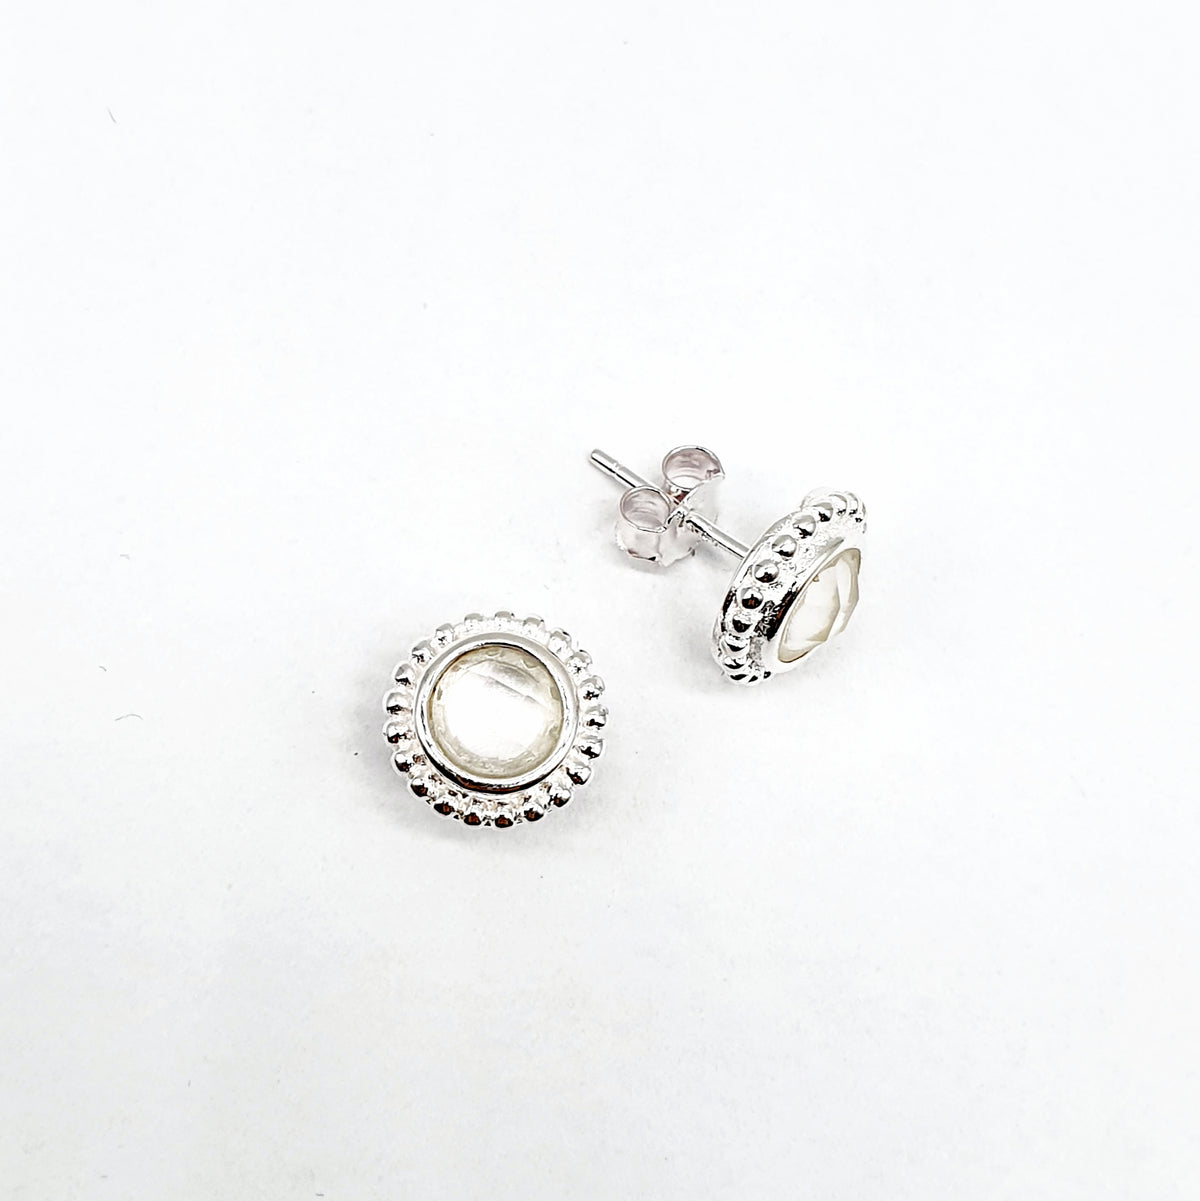 Stud earrings silver (12 colors)